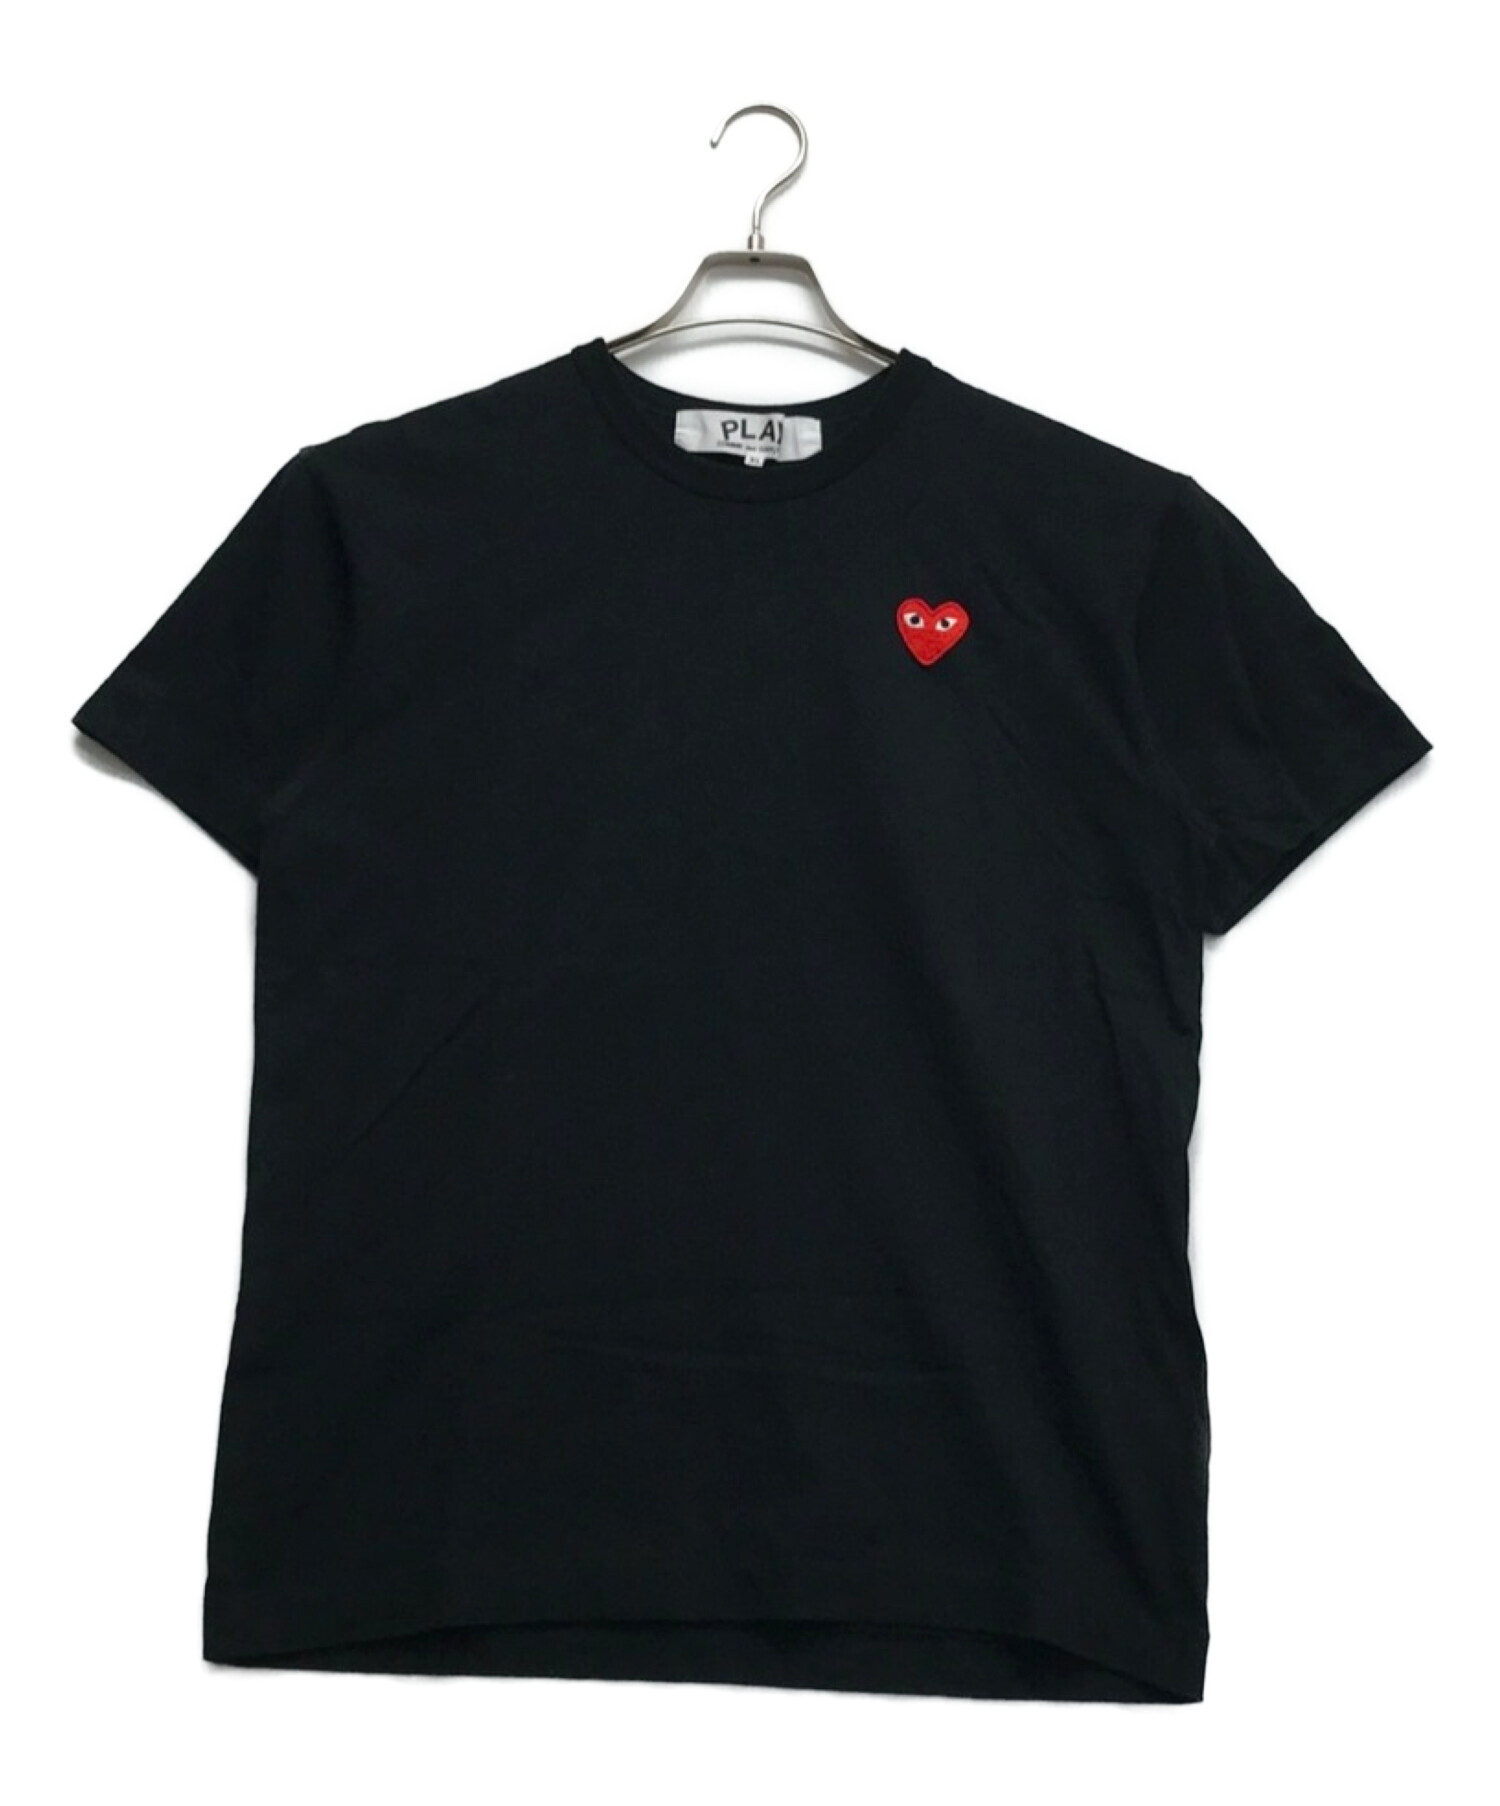 COMME des GARCONS (コムデギャルソン) PLAYハートワンポイントTシャツ ブラック サイズ:XL